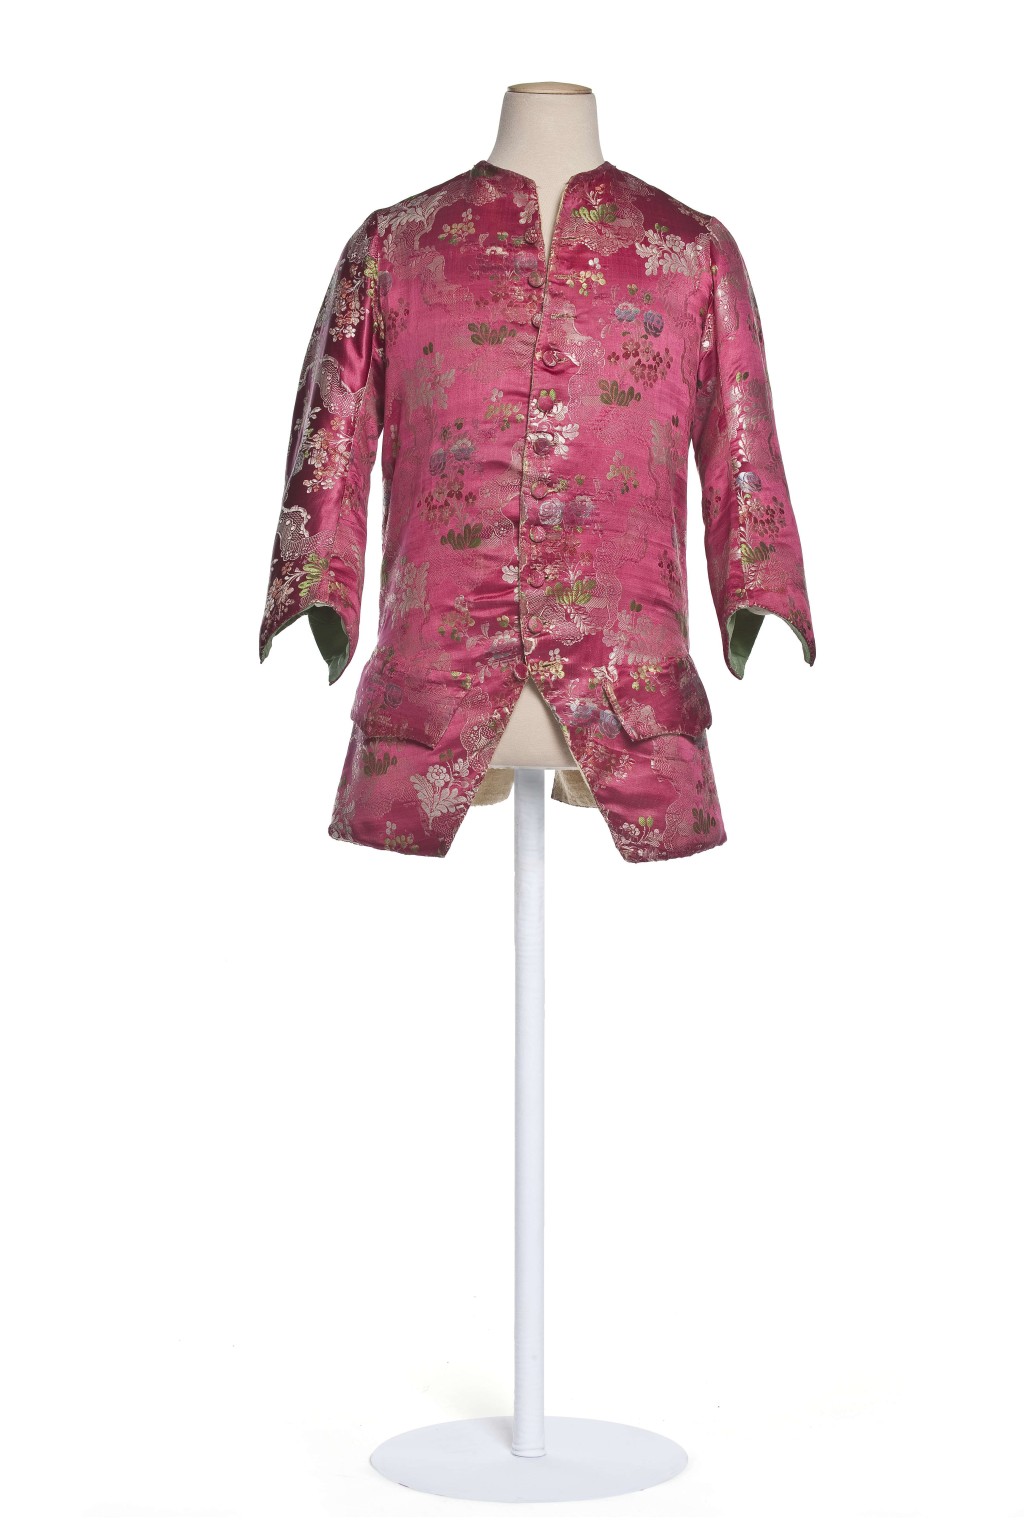 十八世紀的紅色男士外套，採用法國絲綢面料，紋樣仿中國絲綢。© 巴黎裝飾 藝術博物館 / 攝影:尚 · 托朗斯